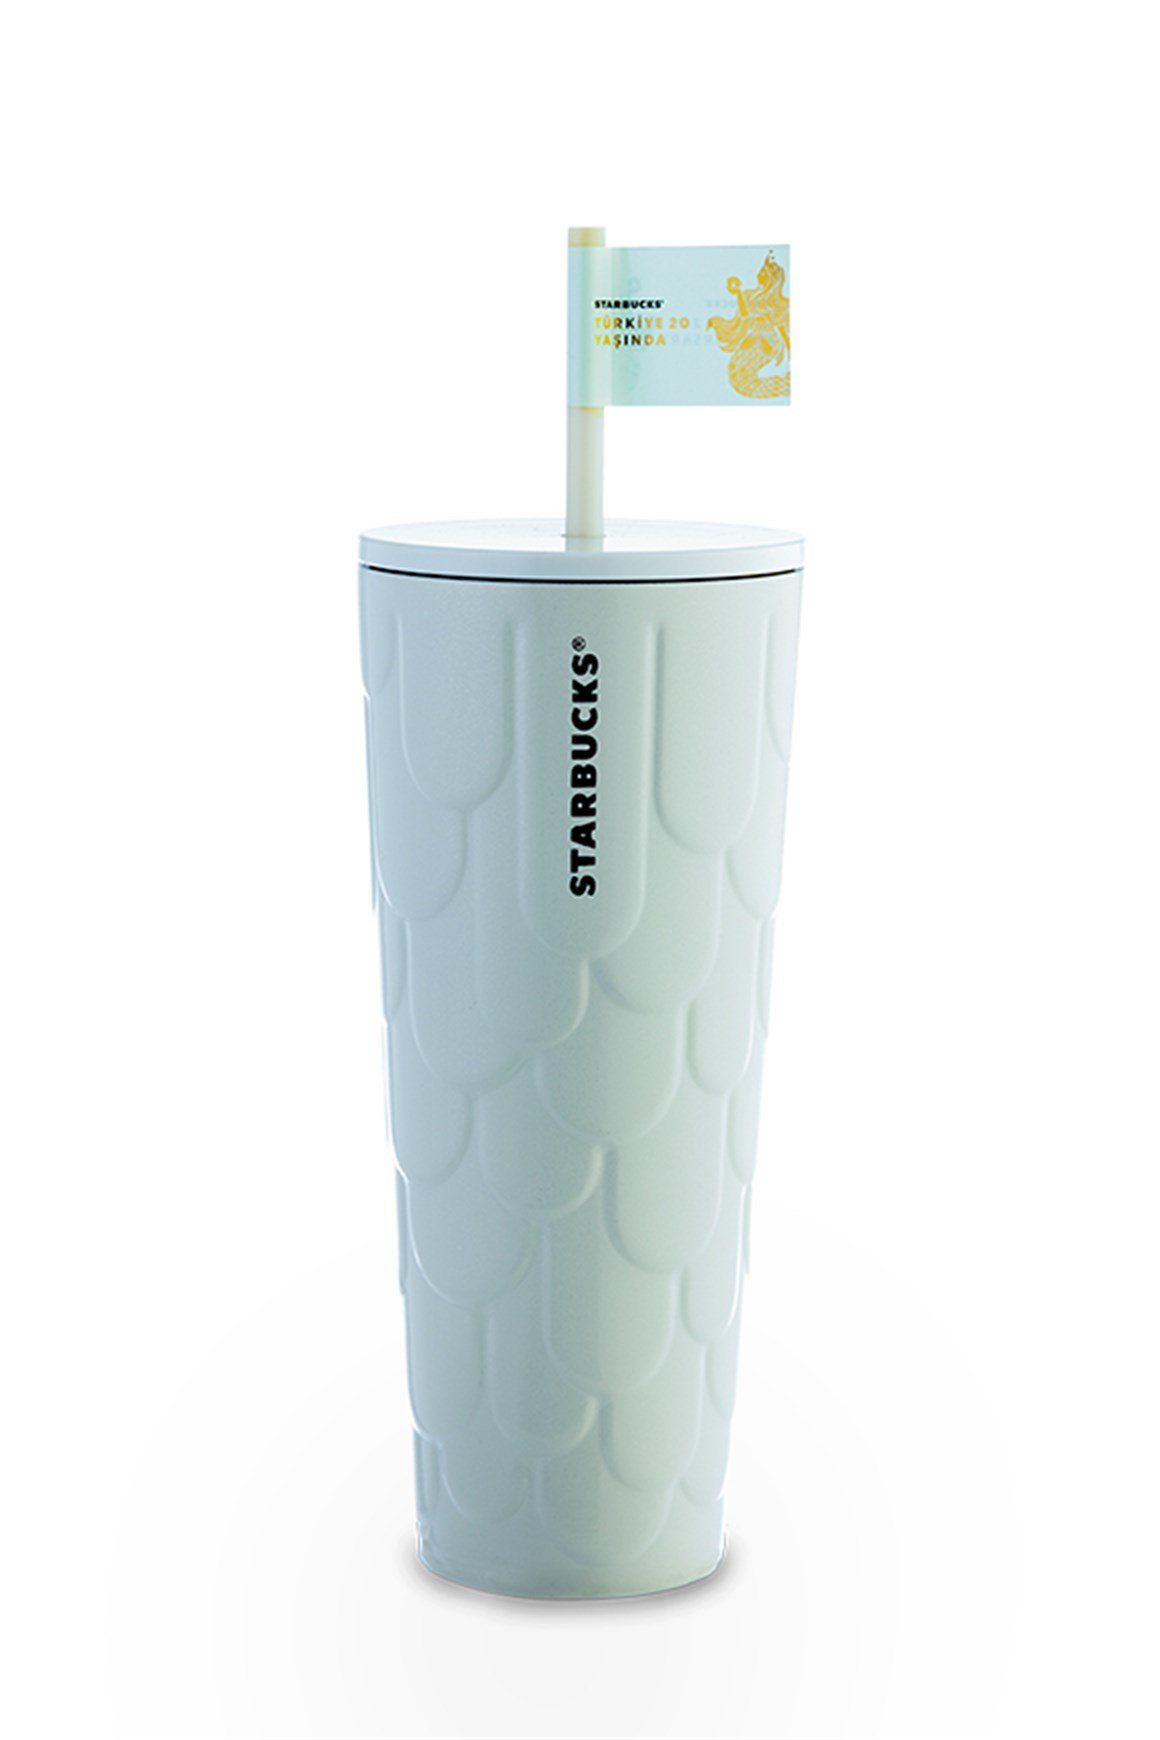 Starbucks® Paslanmaz Çelik Soğuk Içecek Bardağı - Beyaz - 710 ml - 11148302